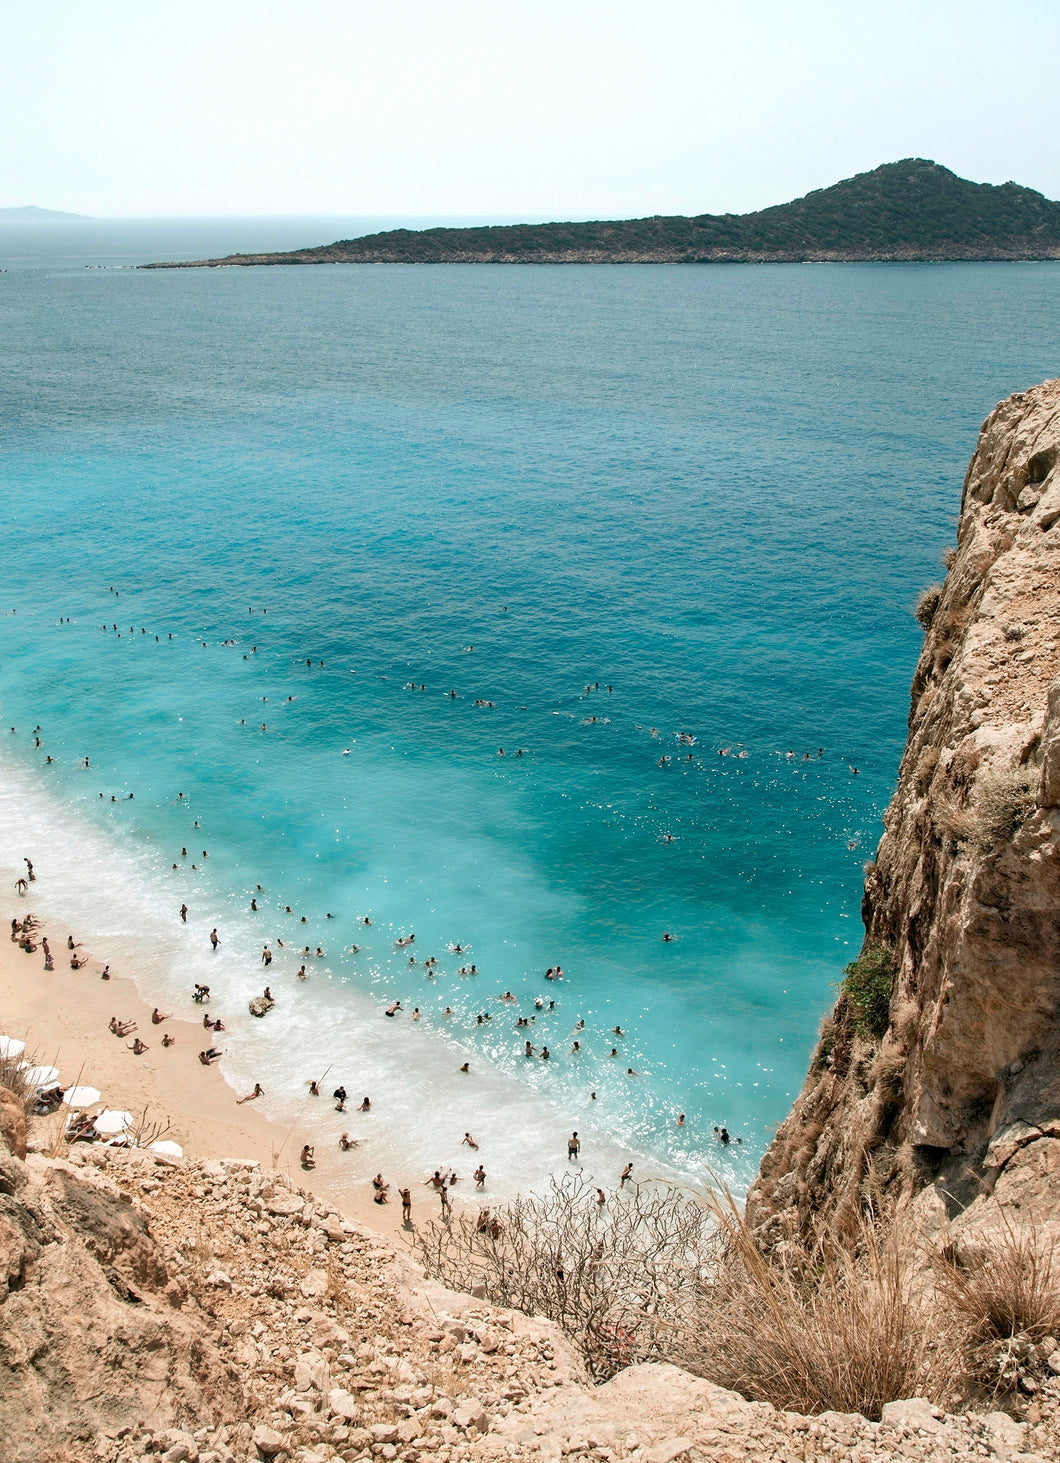 Turquoise Coast, Turkey (I) - Limited Edition (2 sizes available)